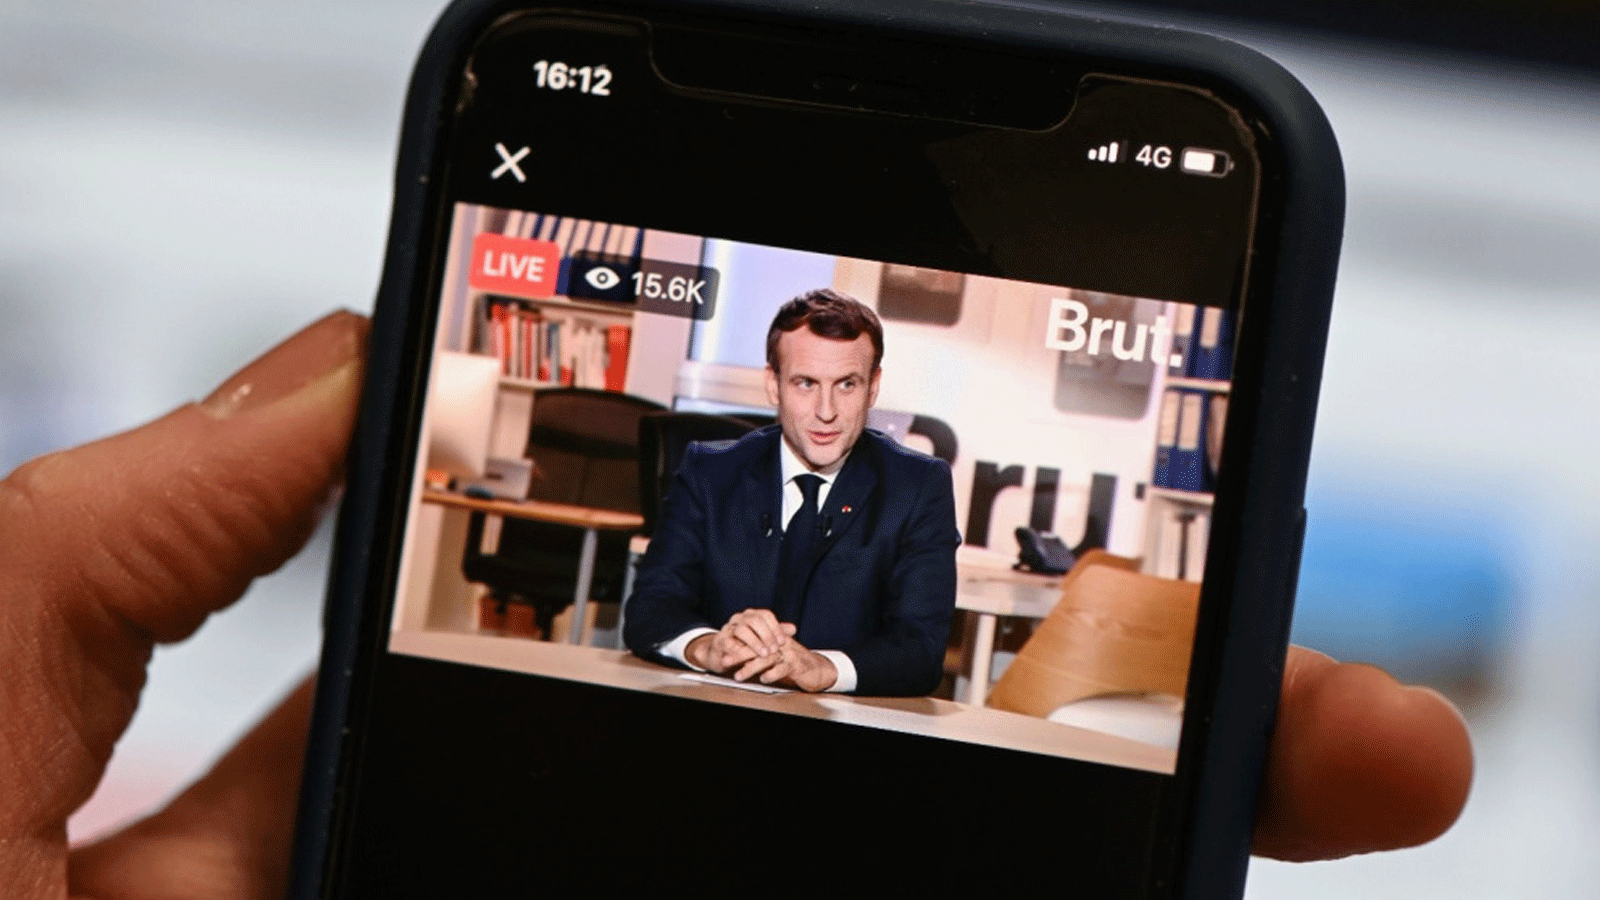 صحفي يشاهد مقابلة مباشرة مع الرئيس الفرنسي إيمانويل ماكرون على منصة الأخبار الرقمية Brut في باريس في 4 كانون الأول/ ديسمبر 2020